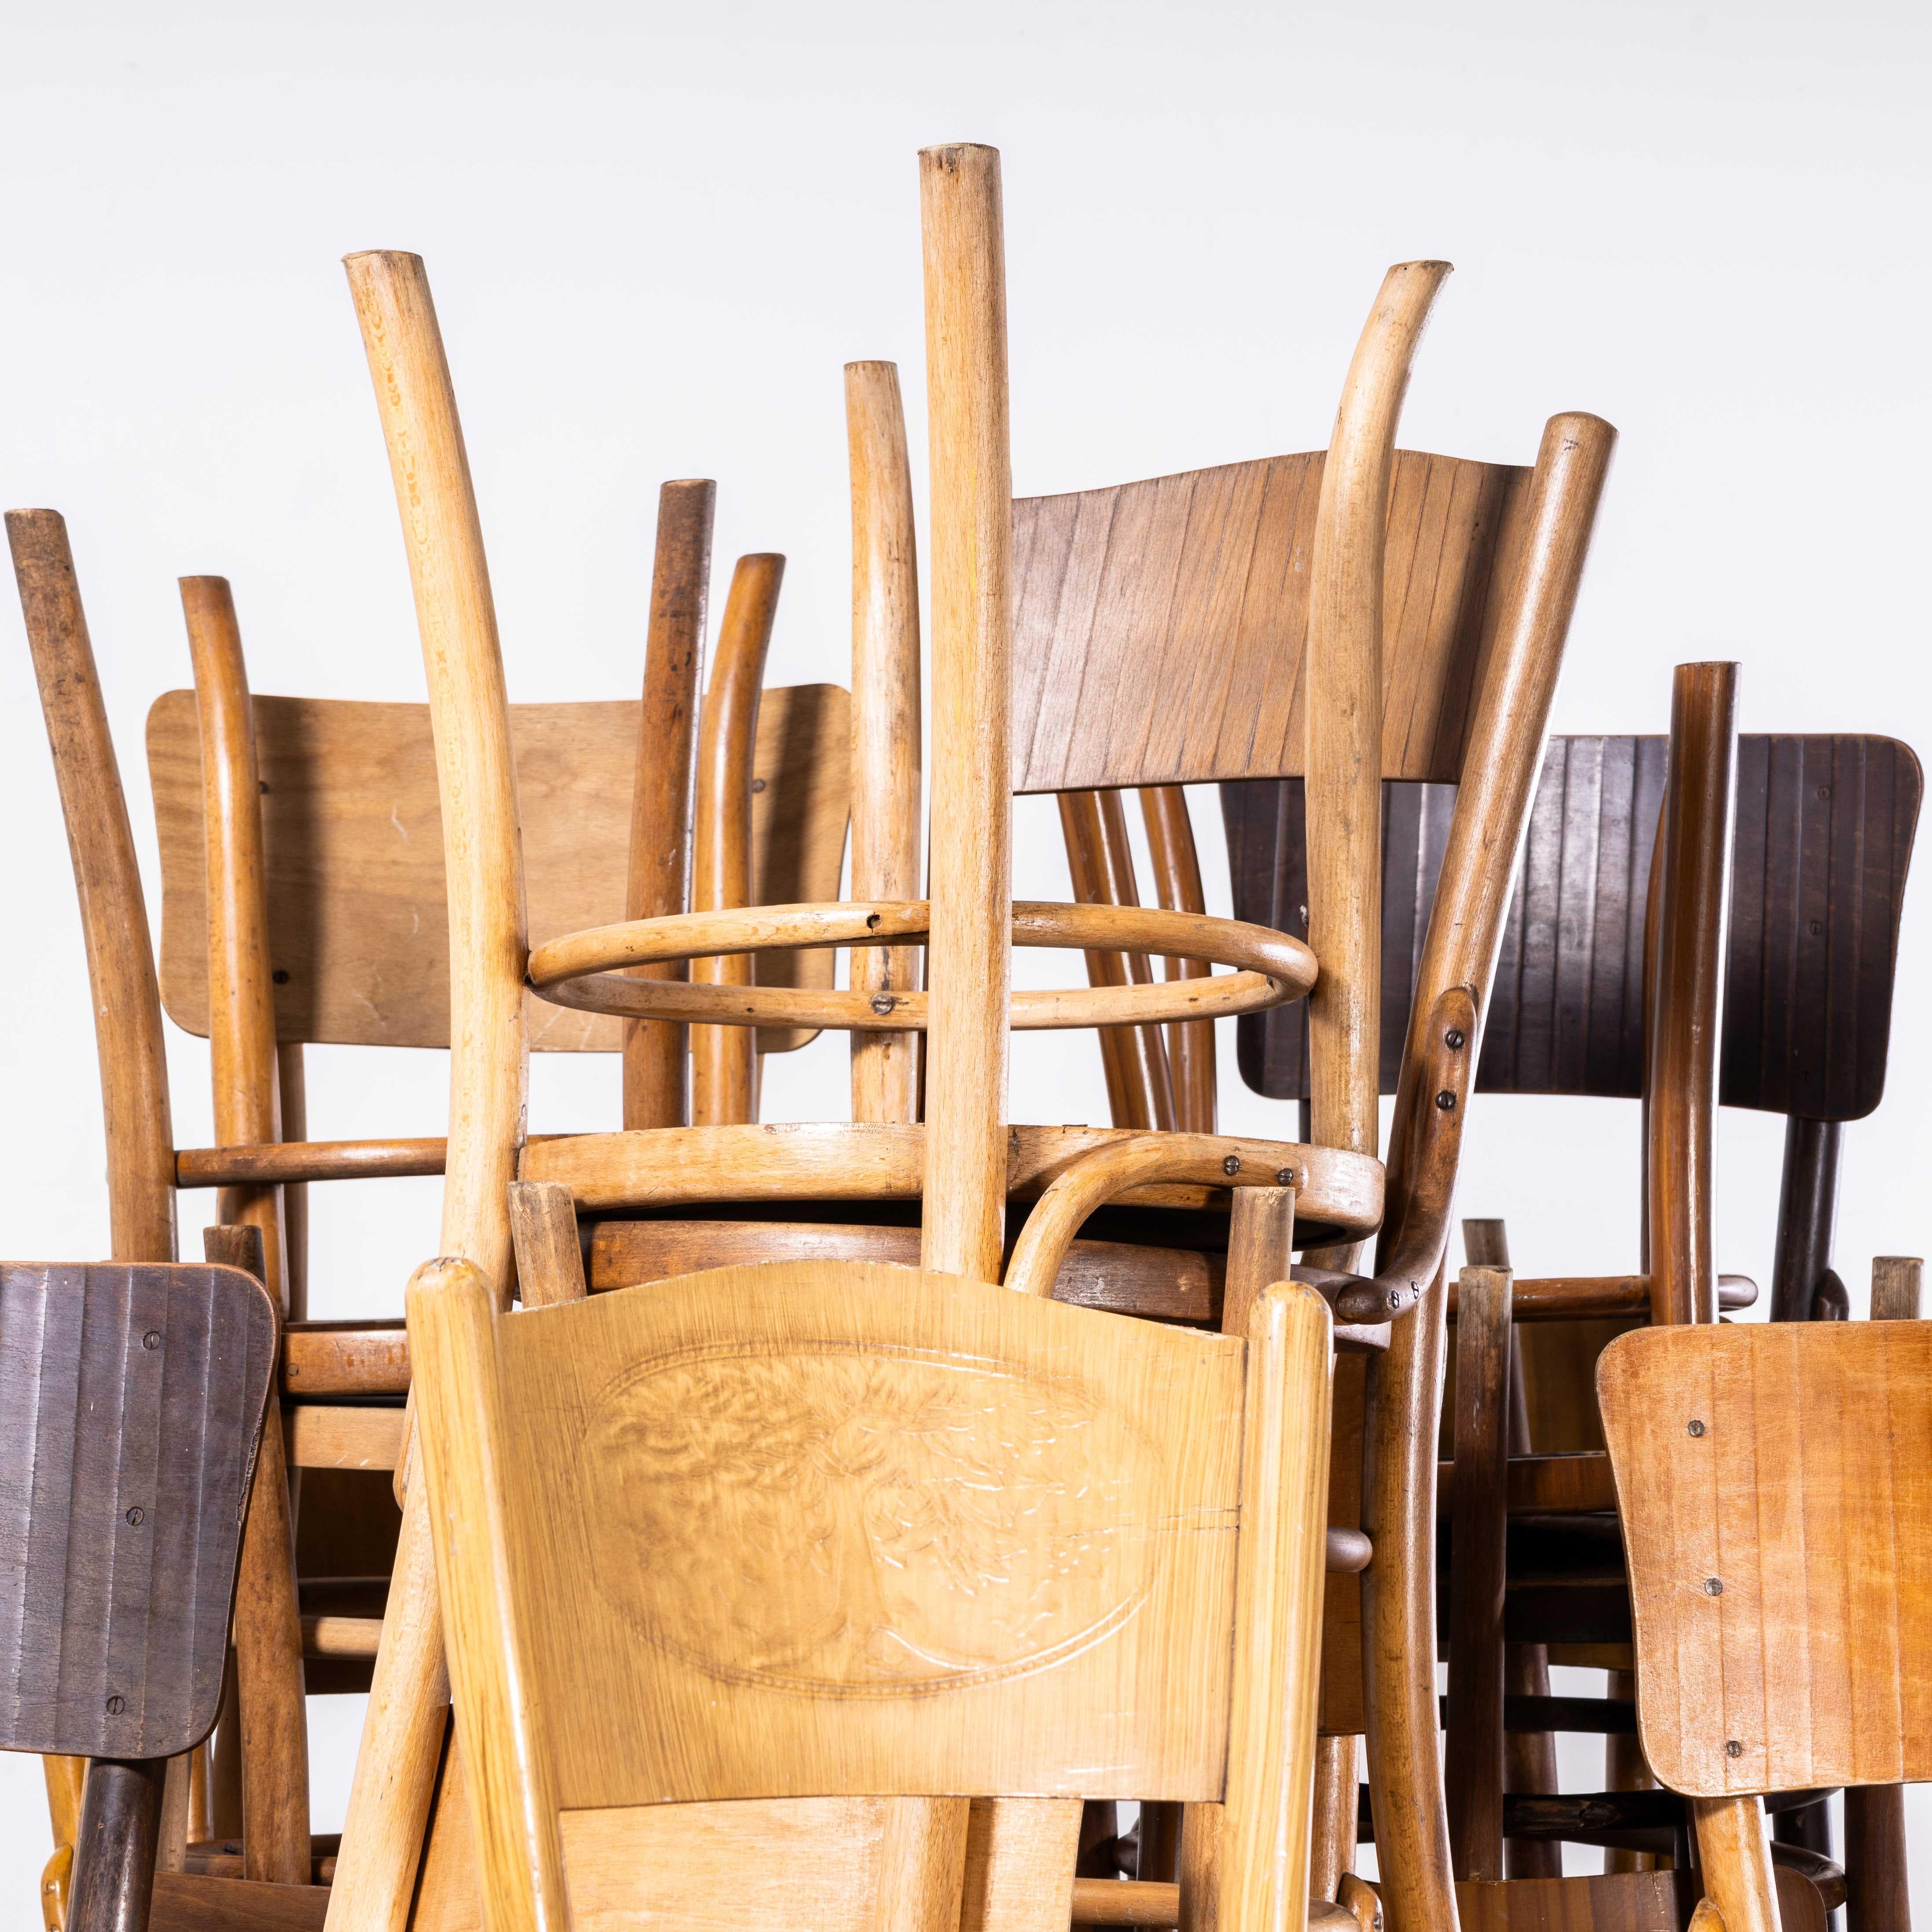 1940's Bentwood Debrecen Panel Back Dining Chairs - Gemischt - Gute Mengen verfügbar
1940's Bentwood Debrecen Panel Back Dining Chairs - Mixed - Good Quantities Available. Dieses Angebot bezieht sich auf einen einzelnen Stuhl mit der Möglichkeit,